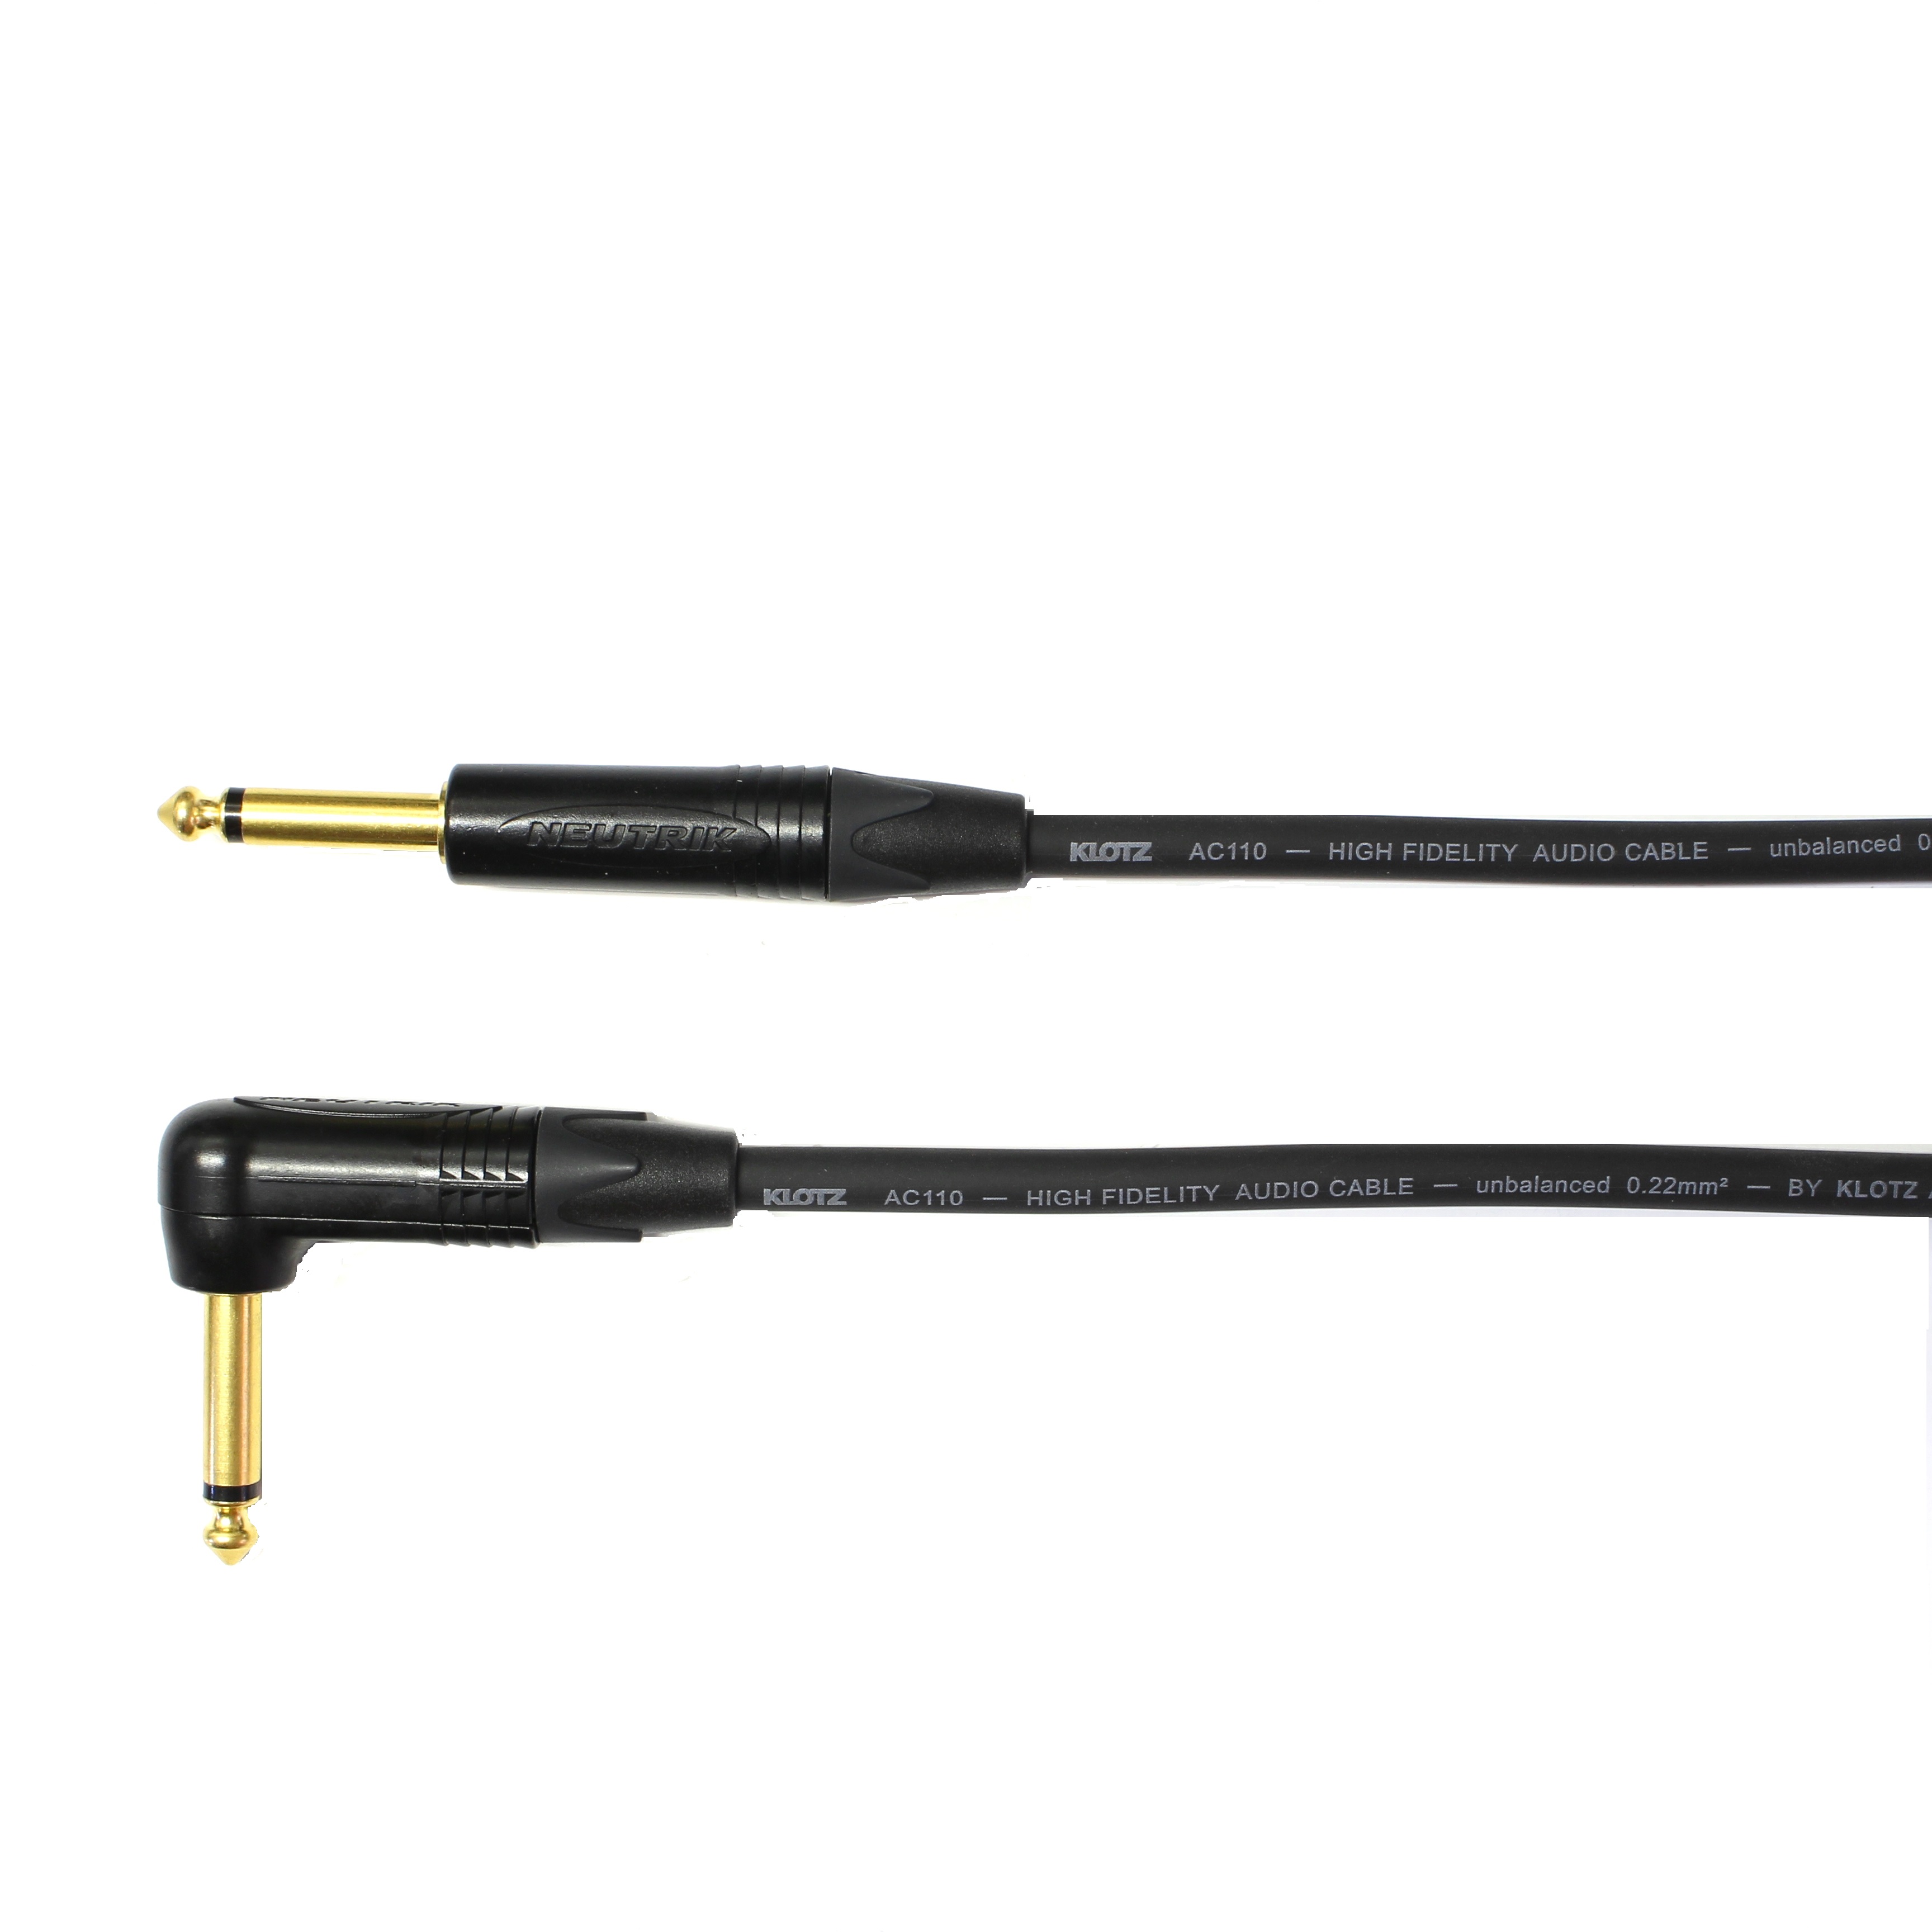 Kytarový kabel Jack 6,3 mono přímý/ Jack 6,3 mono úhlový, 2 m, AC110